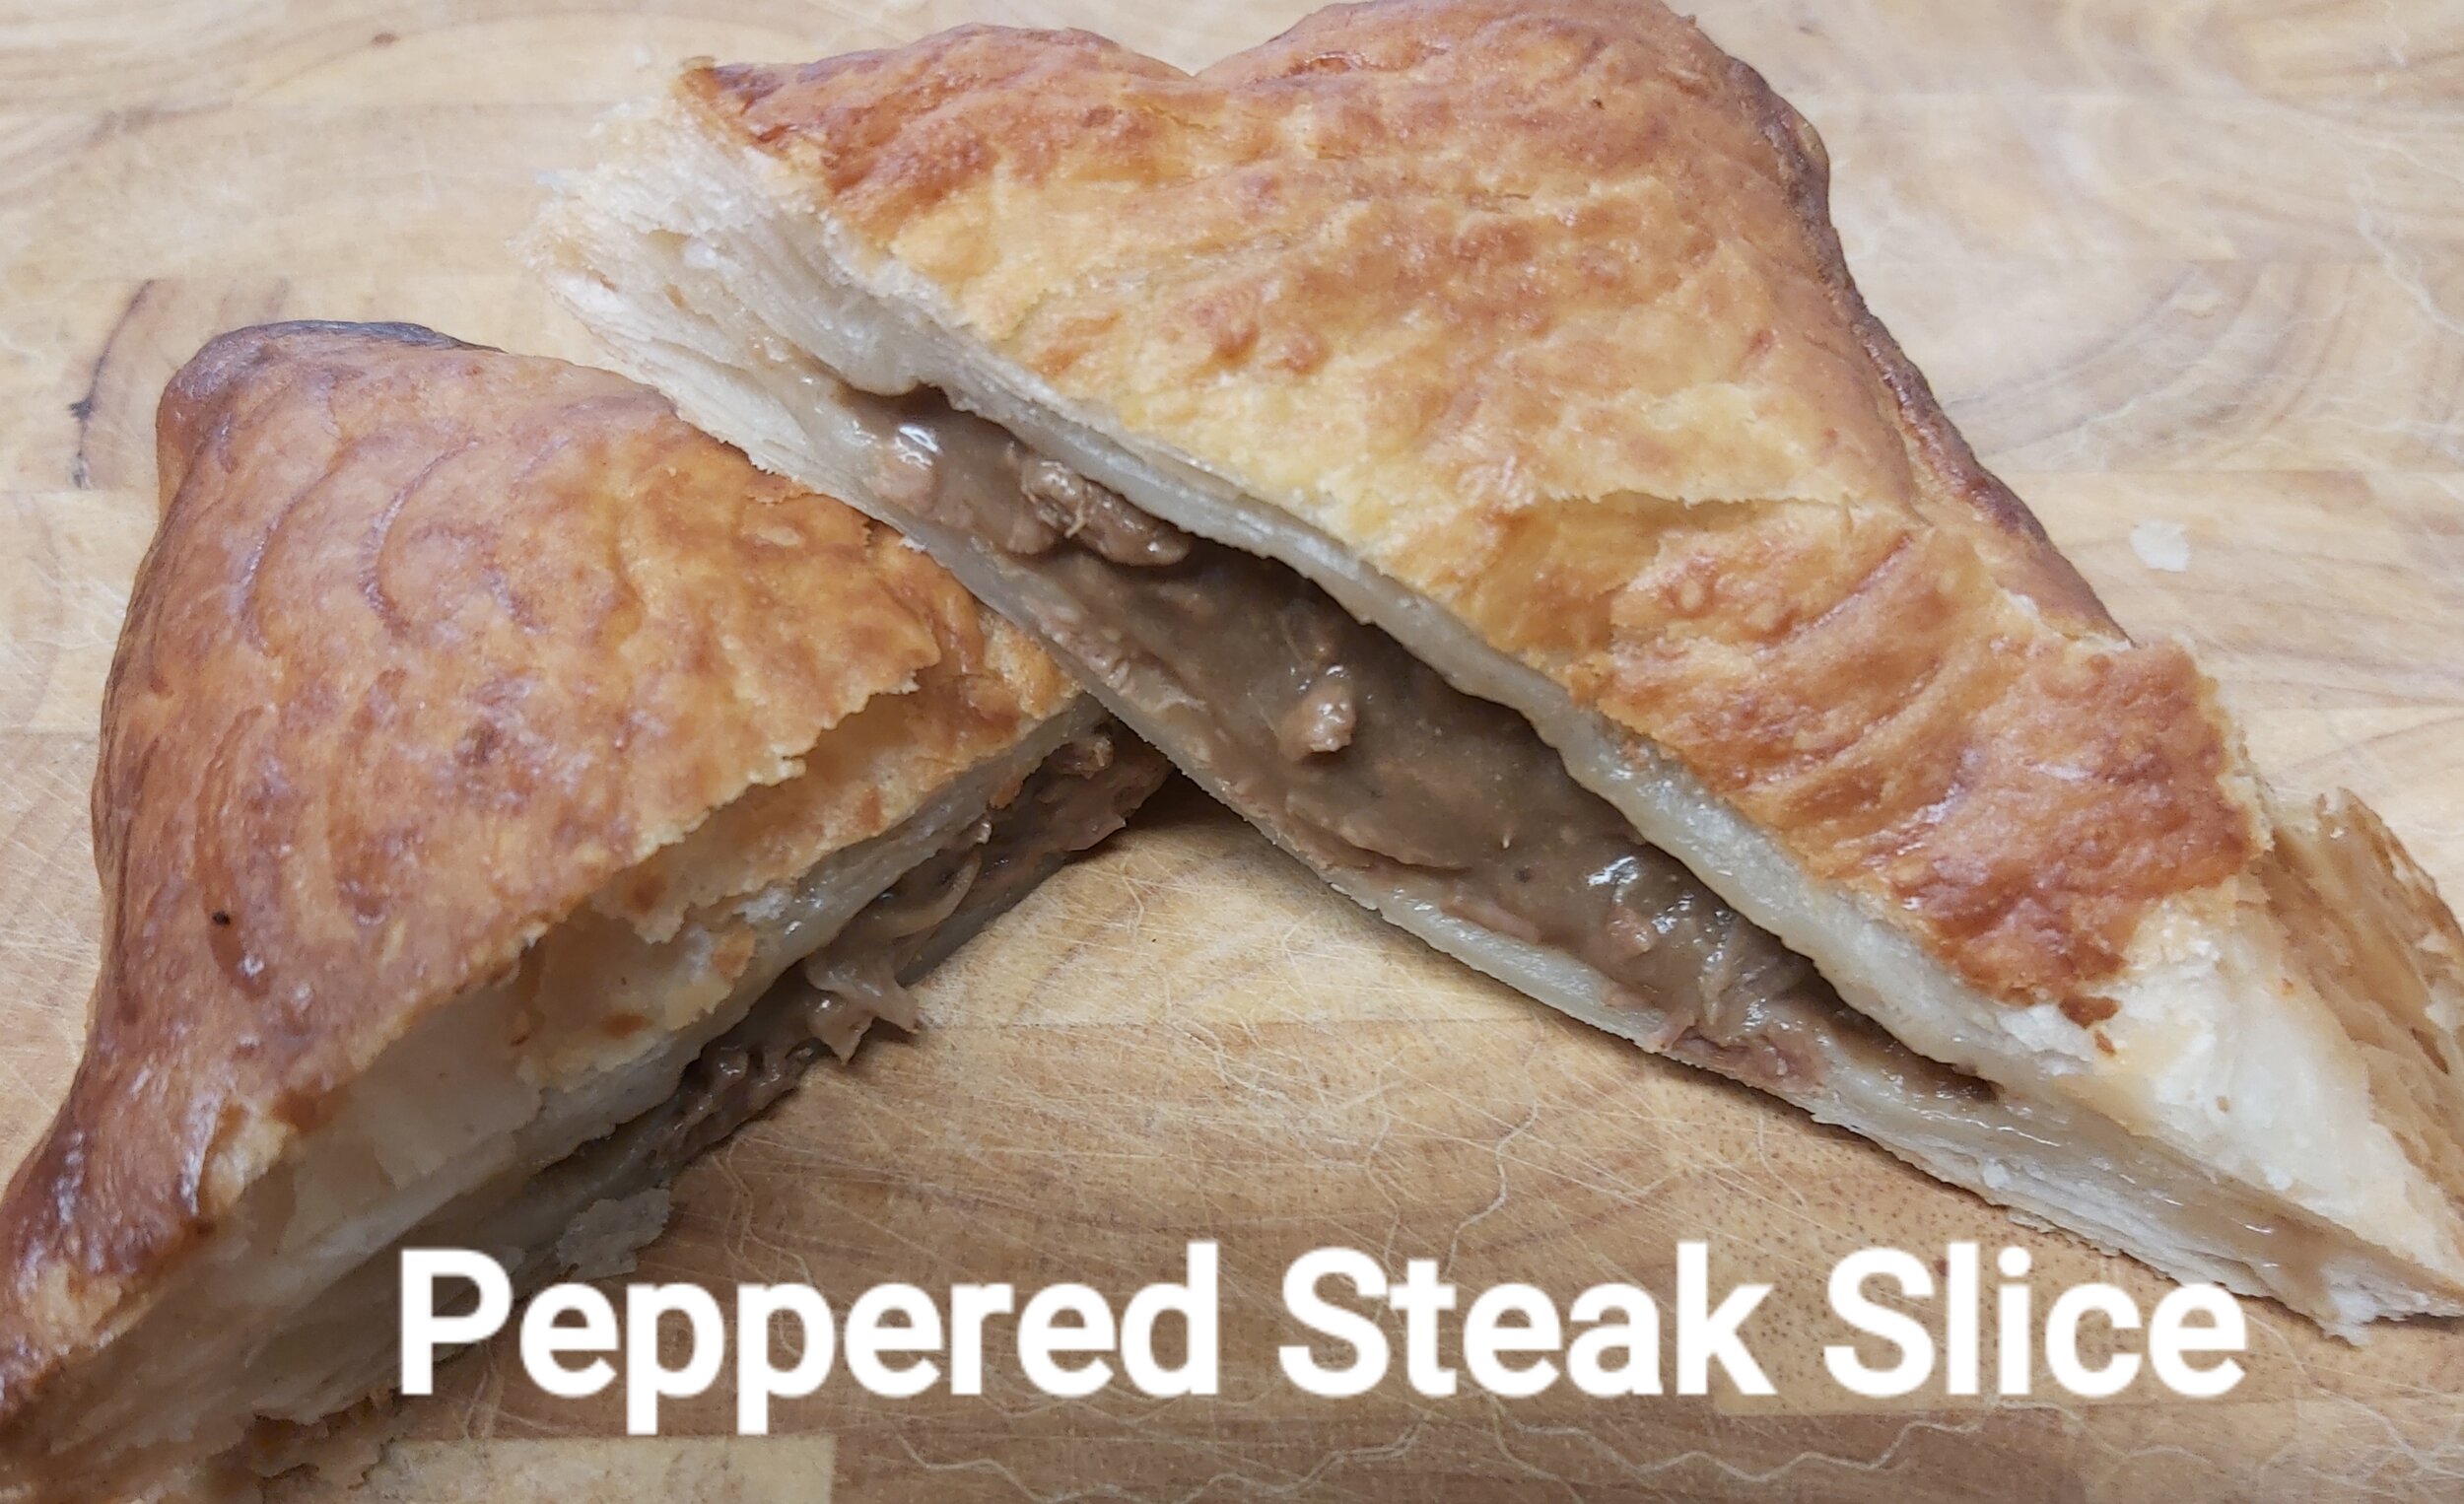 Peppered Steak Slice.jpg